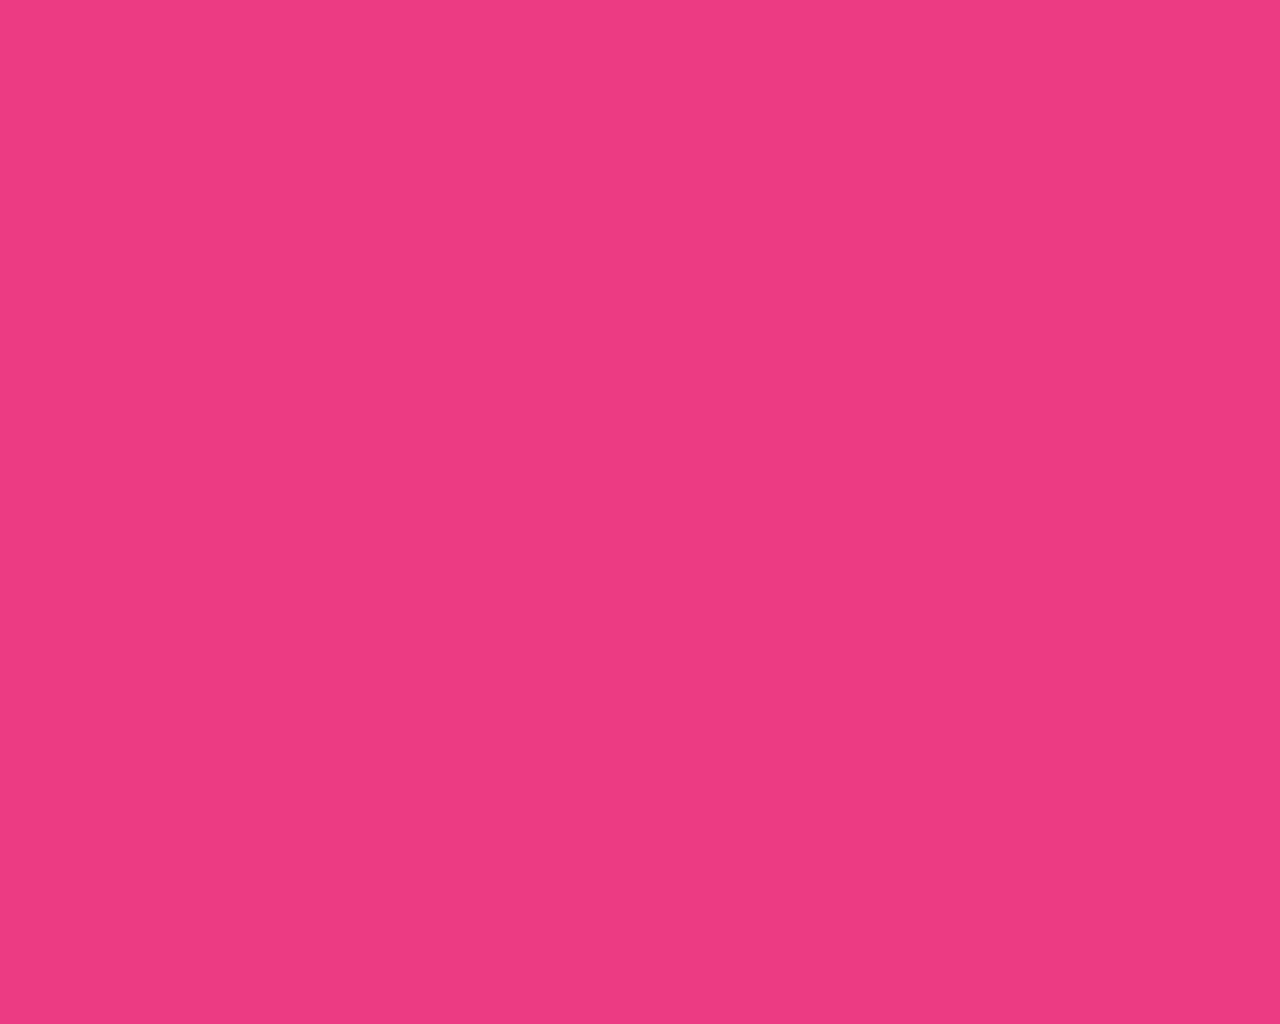 Với nền màu hồng miễn phí để tải xuống, bạn sẽ hoàn toàn yên tâm về chi phí và vẫn có thể sử dụng hình ảnh này để tạo nên một không gian đầy màu sắc và năng lượng của tông màu hồng tươi sáng. Hãy tải xuống ngay để khám phá ngay hôm nay!